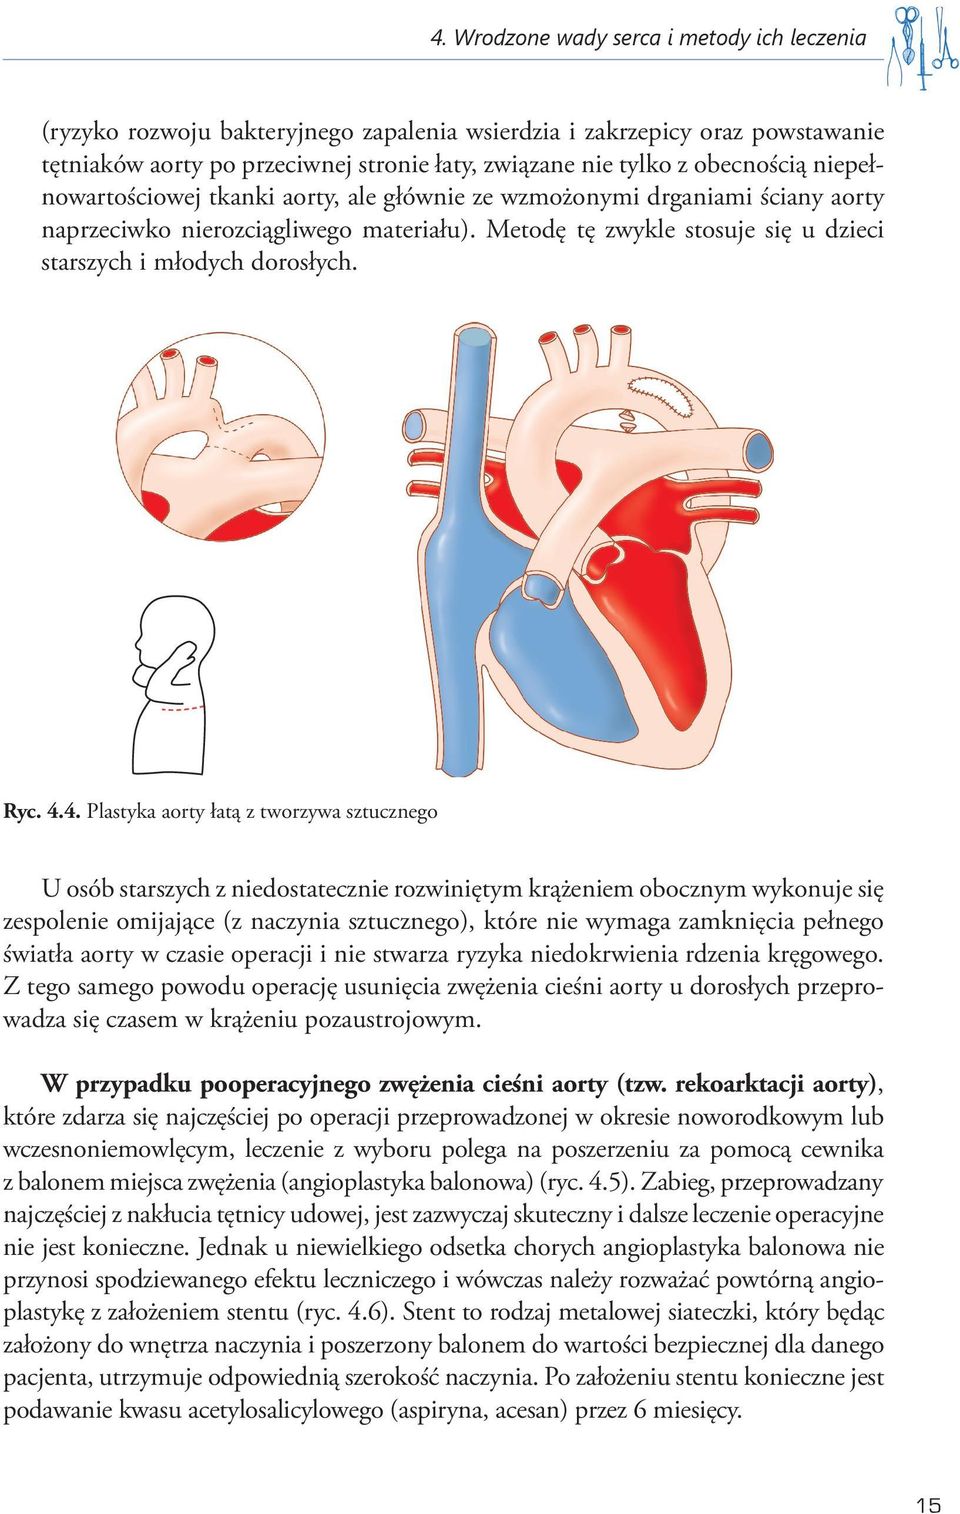 4.4. Plastyka aorty łatą z tworzywa sztucznego U osób starszych z niedostatecznie rozwiniętym krążeniem obocznym wykonuje się zespolenie omijające (z naczynia sztucznego), które nie wymaga zamknięcia